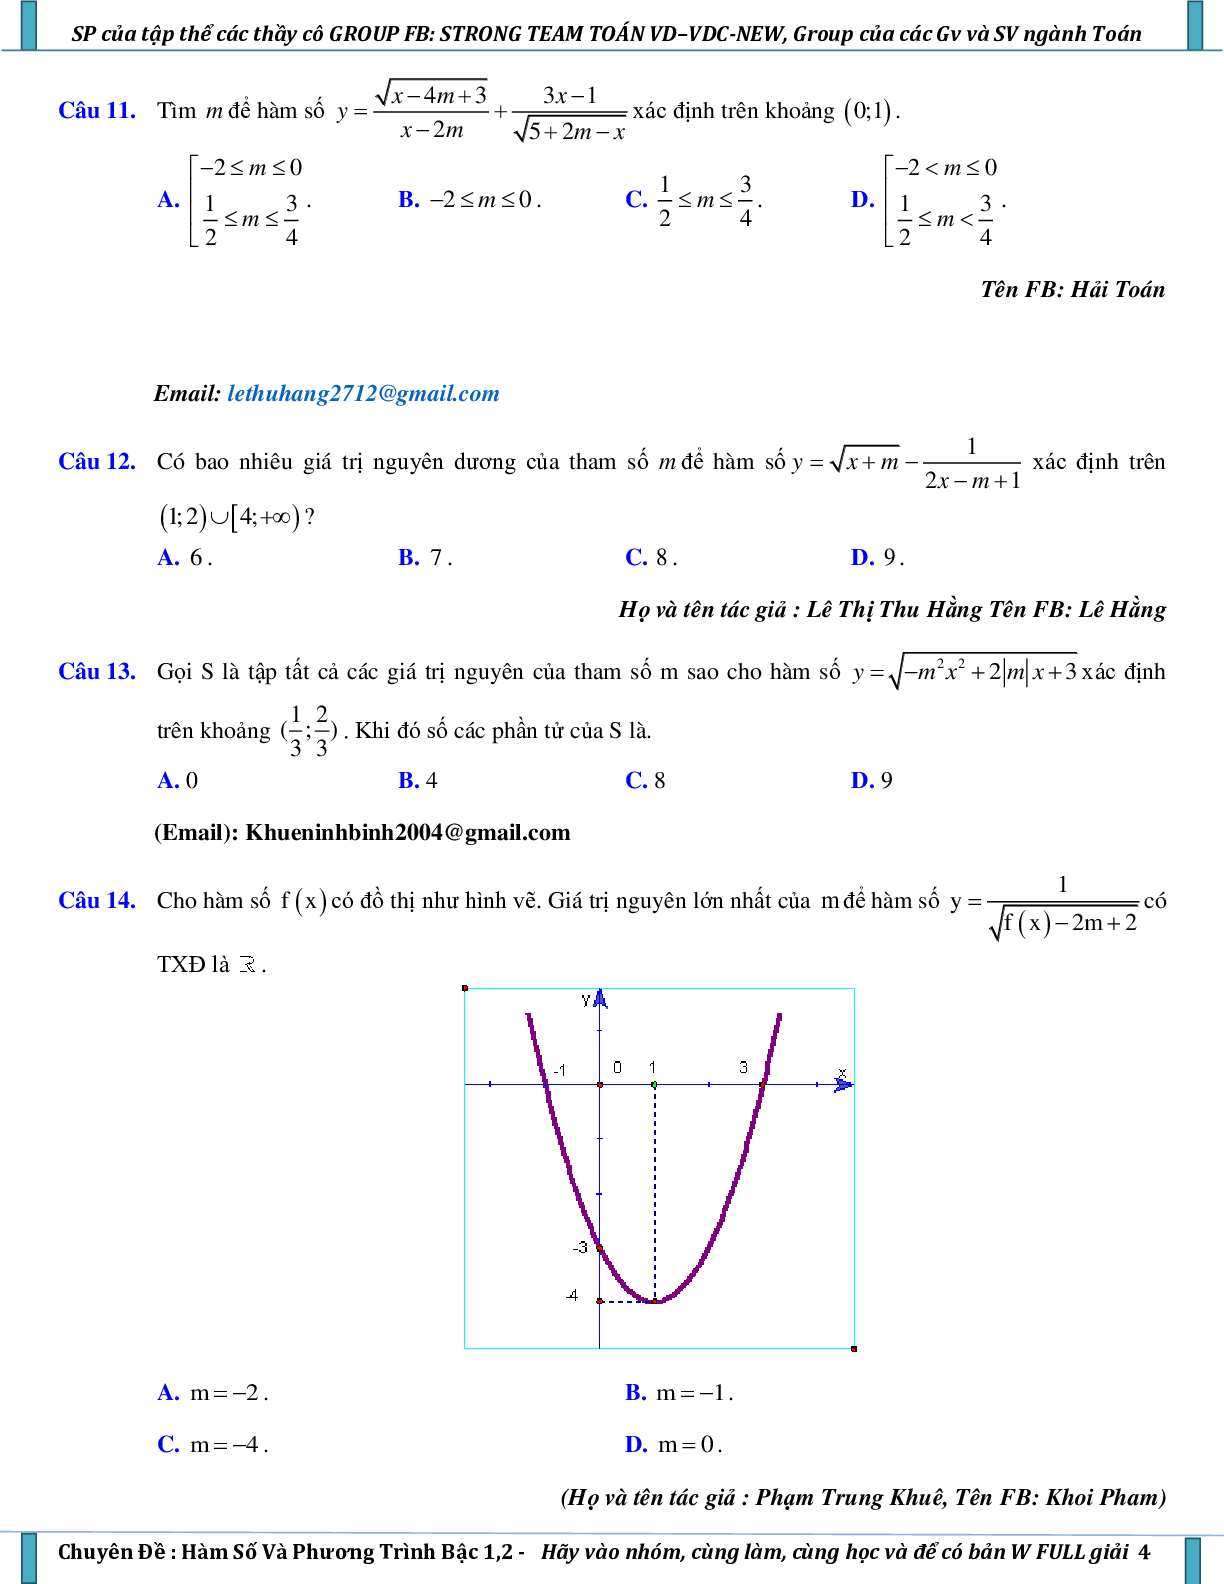 Vận dụng – vận dụng cao hàm số và phương trình bậc nhất, bậc hai (trang 4)